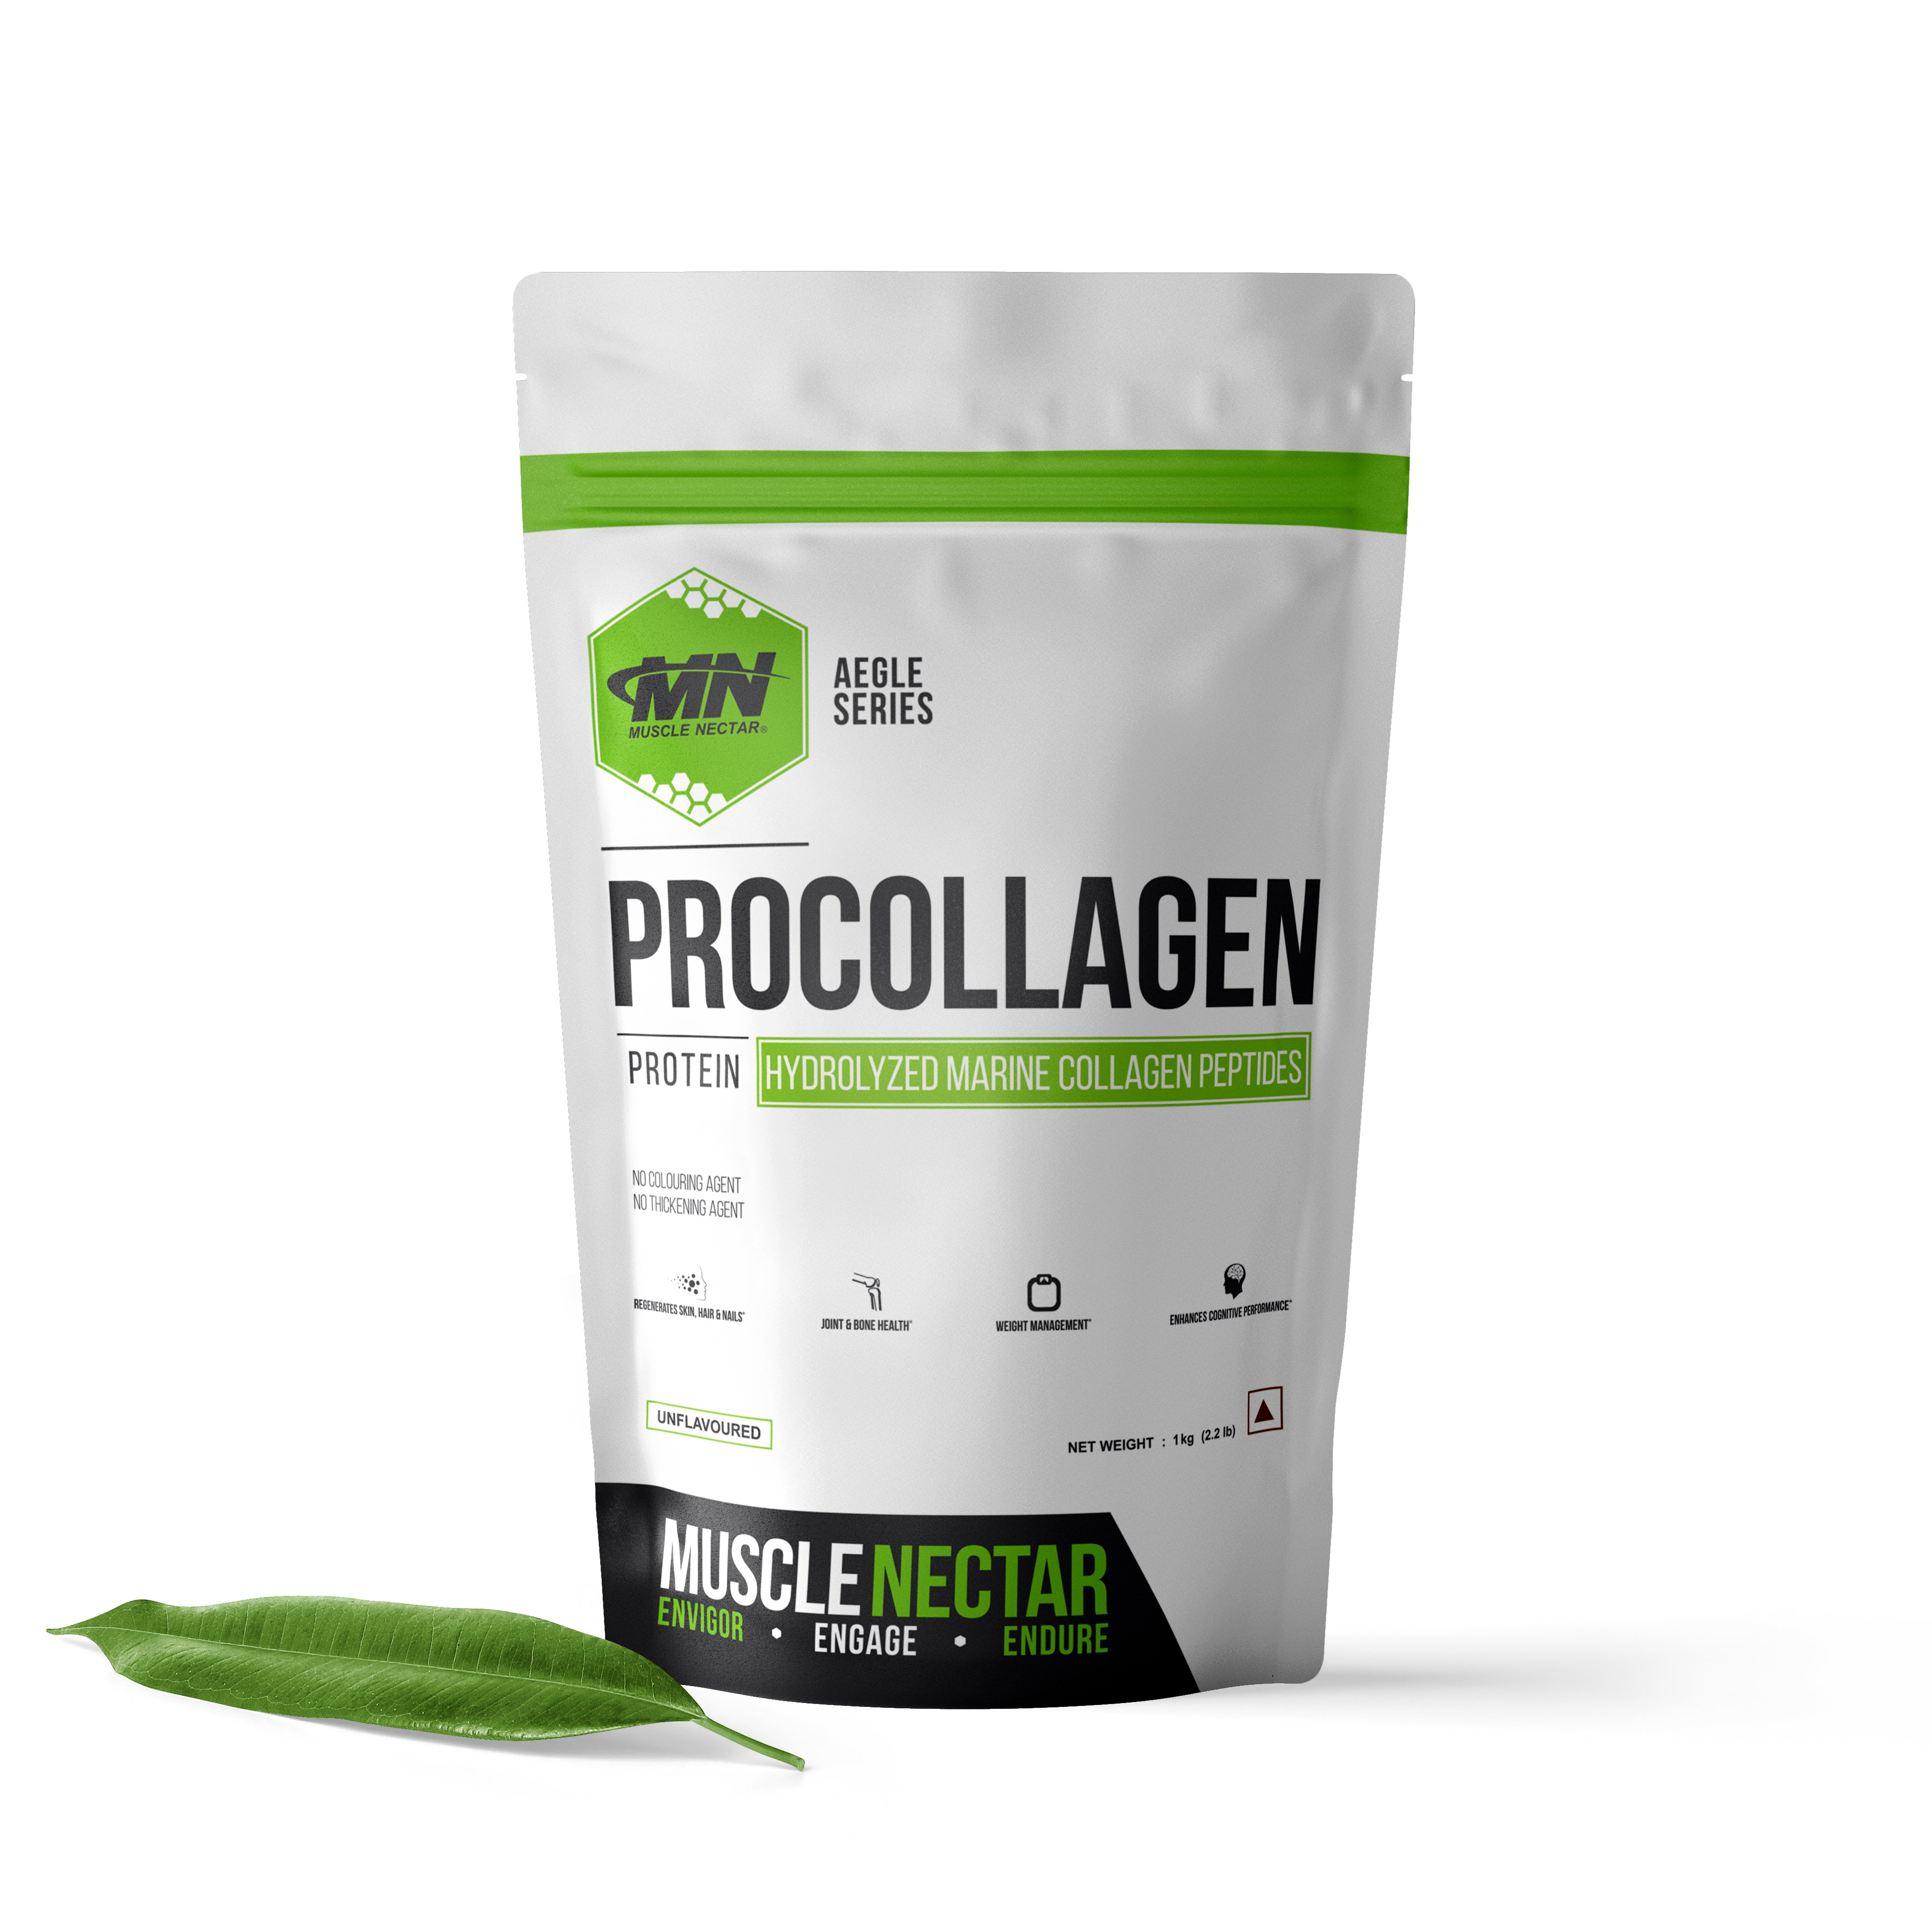 PROCOLLAGEN®, Hydrolyzed Collagen Peptides Protein